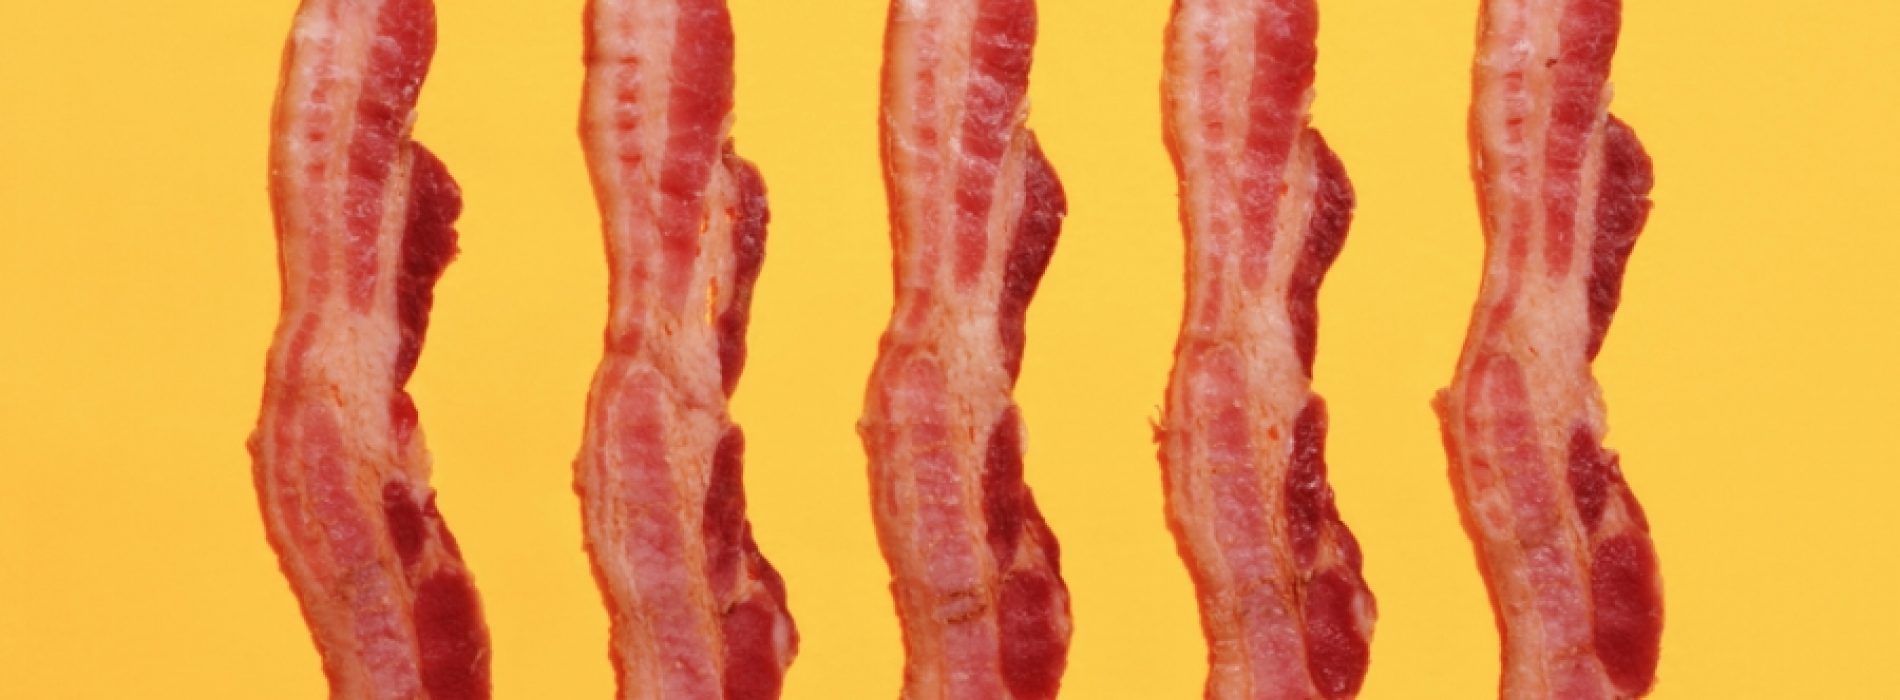 Gek op Bacon? Met dit heerlijke recept maak jij jouw eigen GEZONDE bacon!